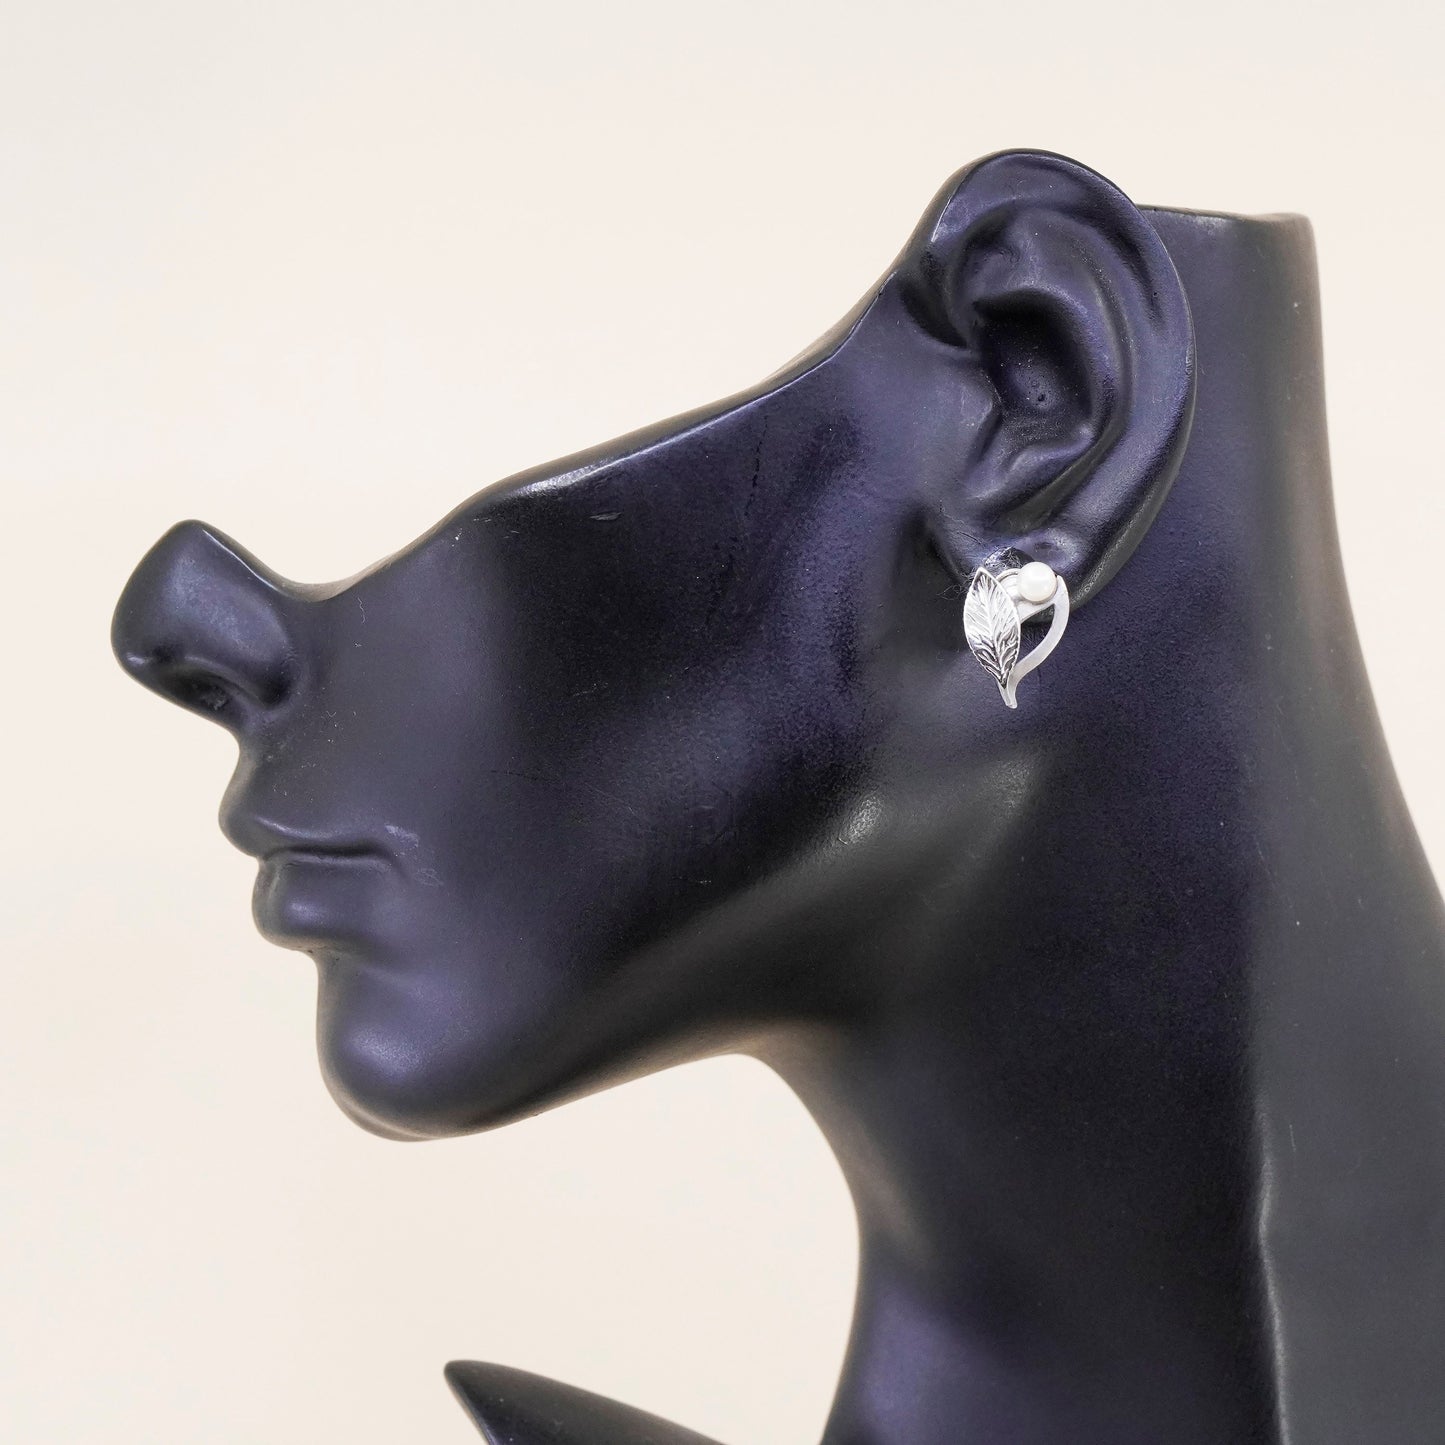 Vintage Sterling silver handmade earrings, 925 screw back leaf with pearl